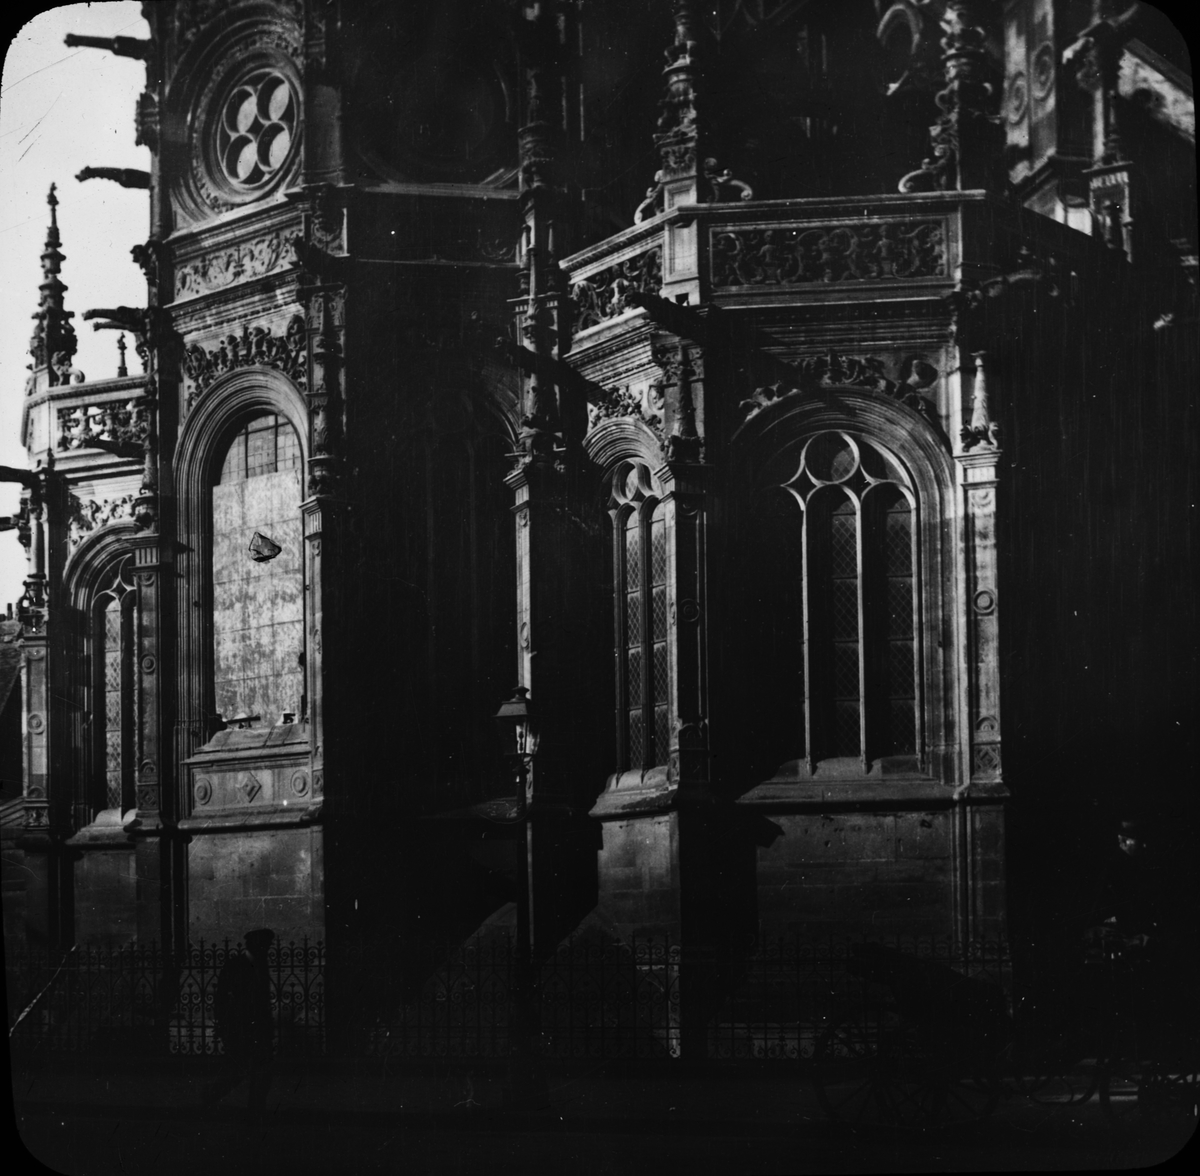 Skioptikonbild med motiv av L'église Saint-Pierre i Caen.
Bilden har förvarats i kartong märkt: Resan 1908. Caen 8. X. Text på bild: "EÂ´gl. St. Pierre".